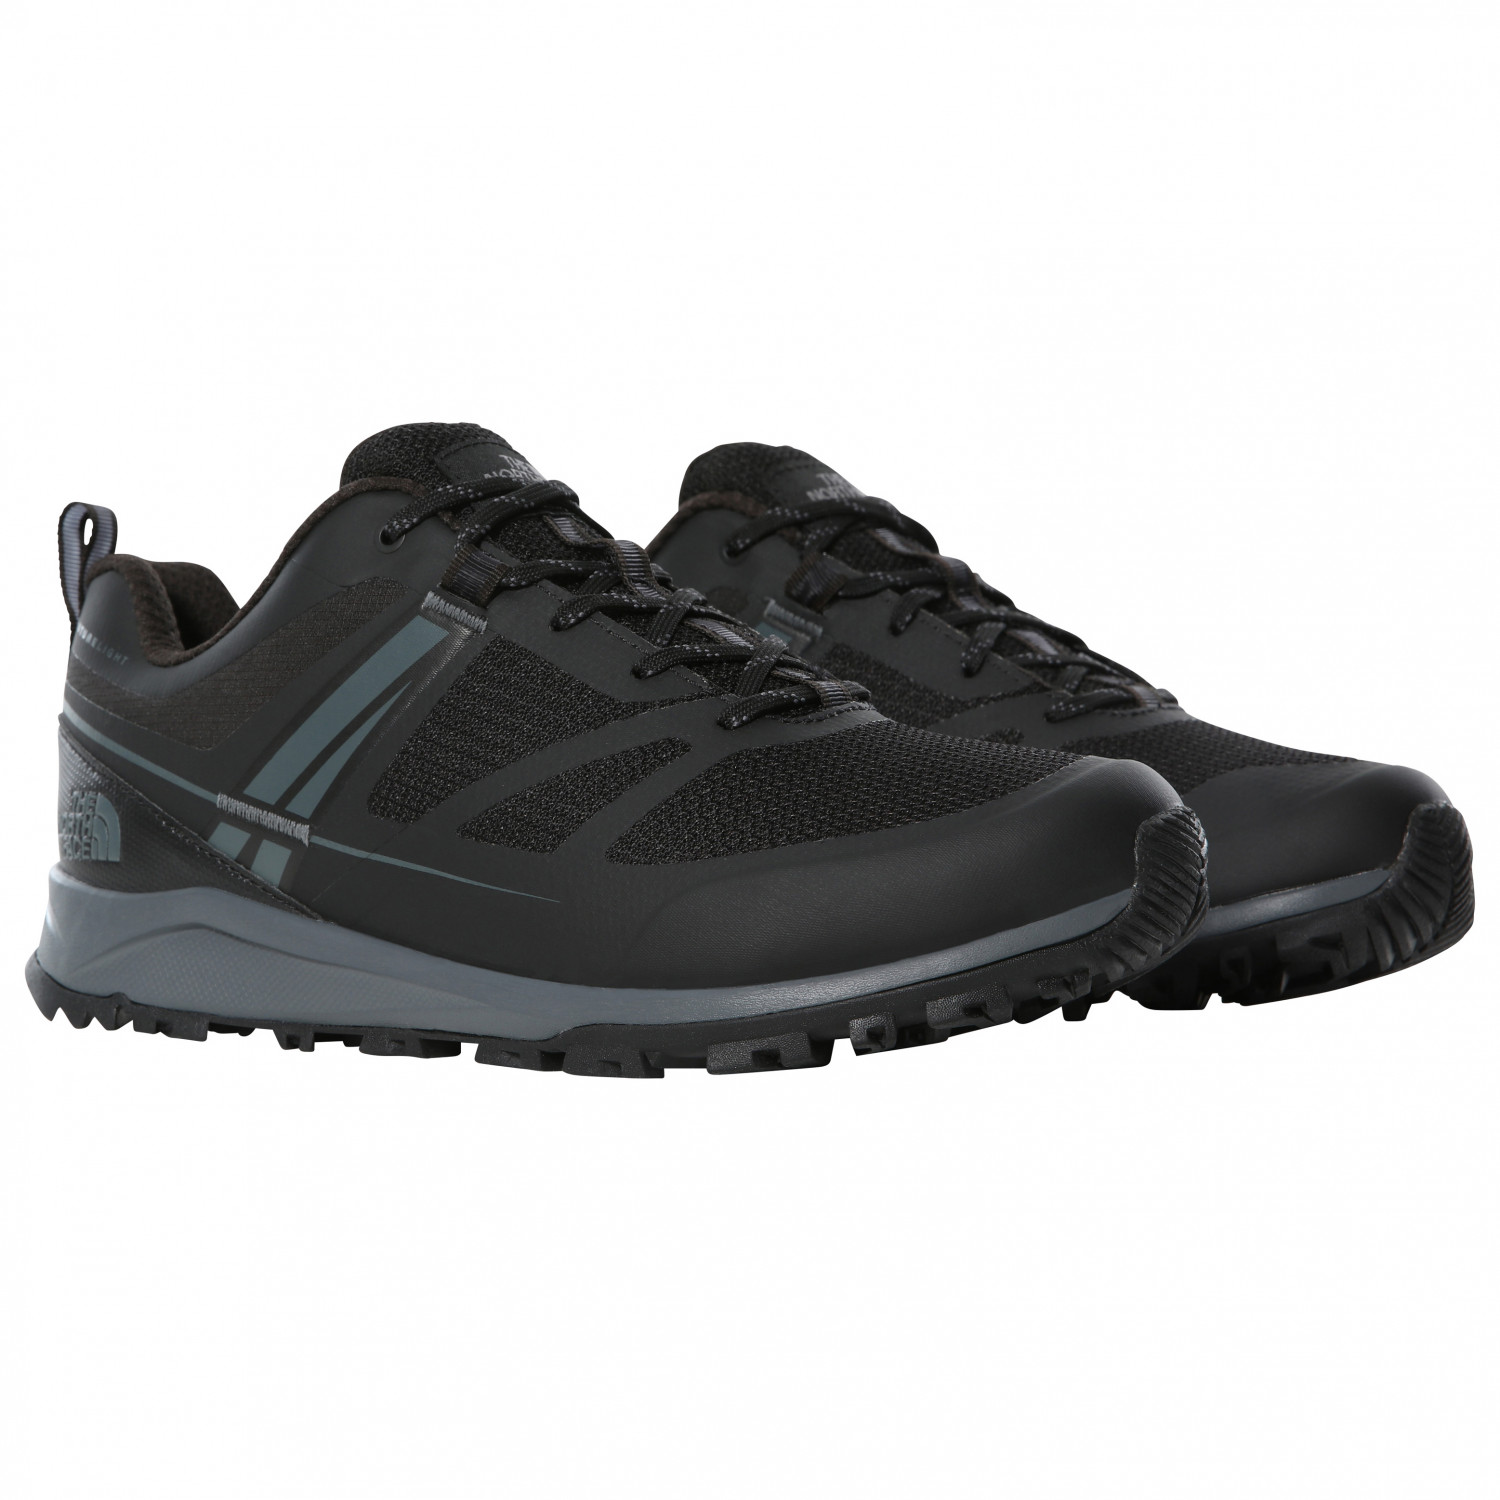 Мультиспортивная обувь The North Face Litewave Futurelight, цвет TNF Black/Zinc Grey